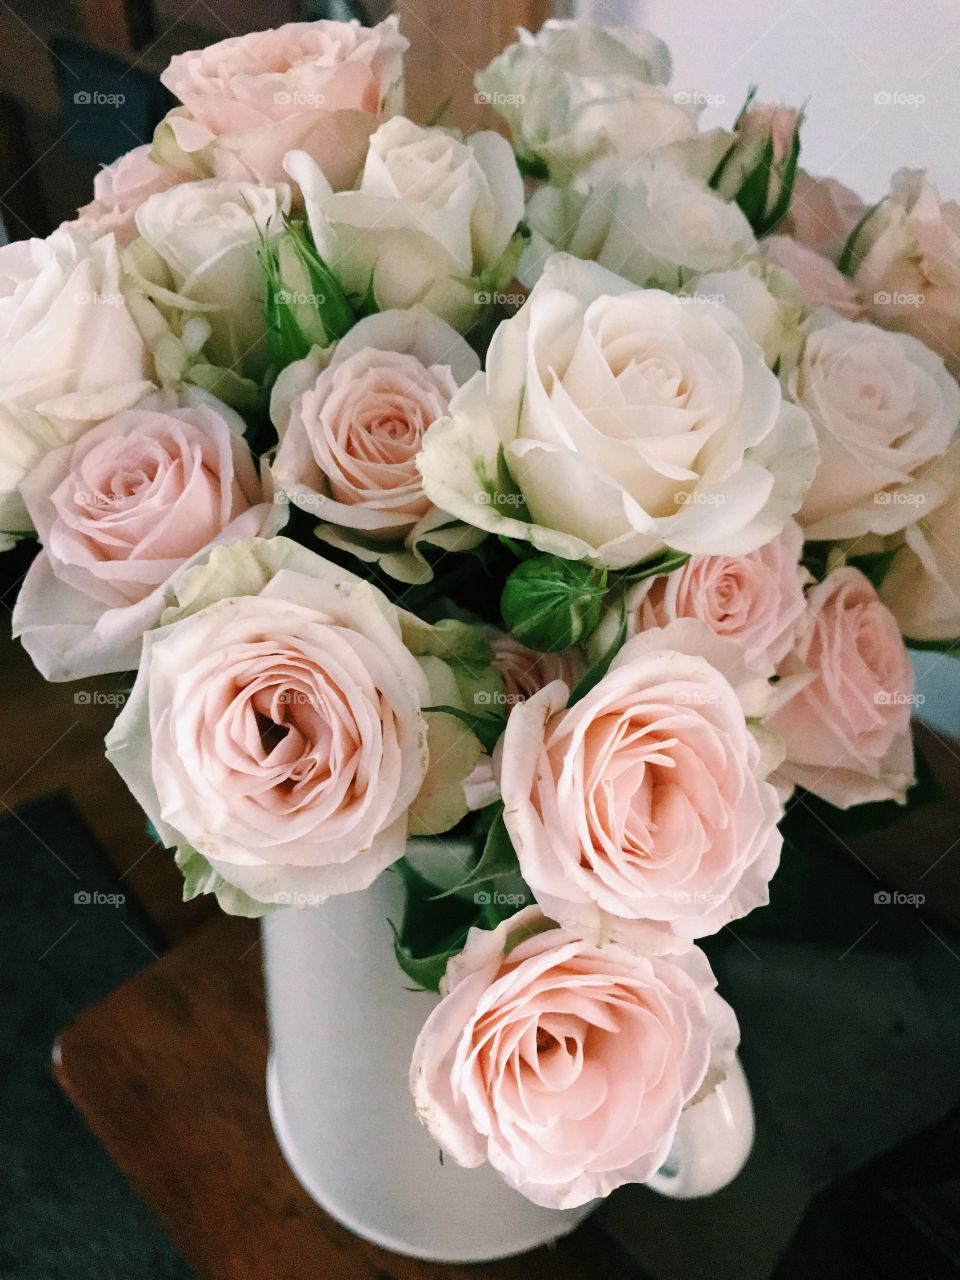 Blush roses